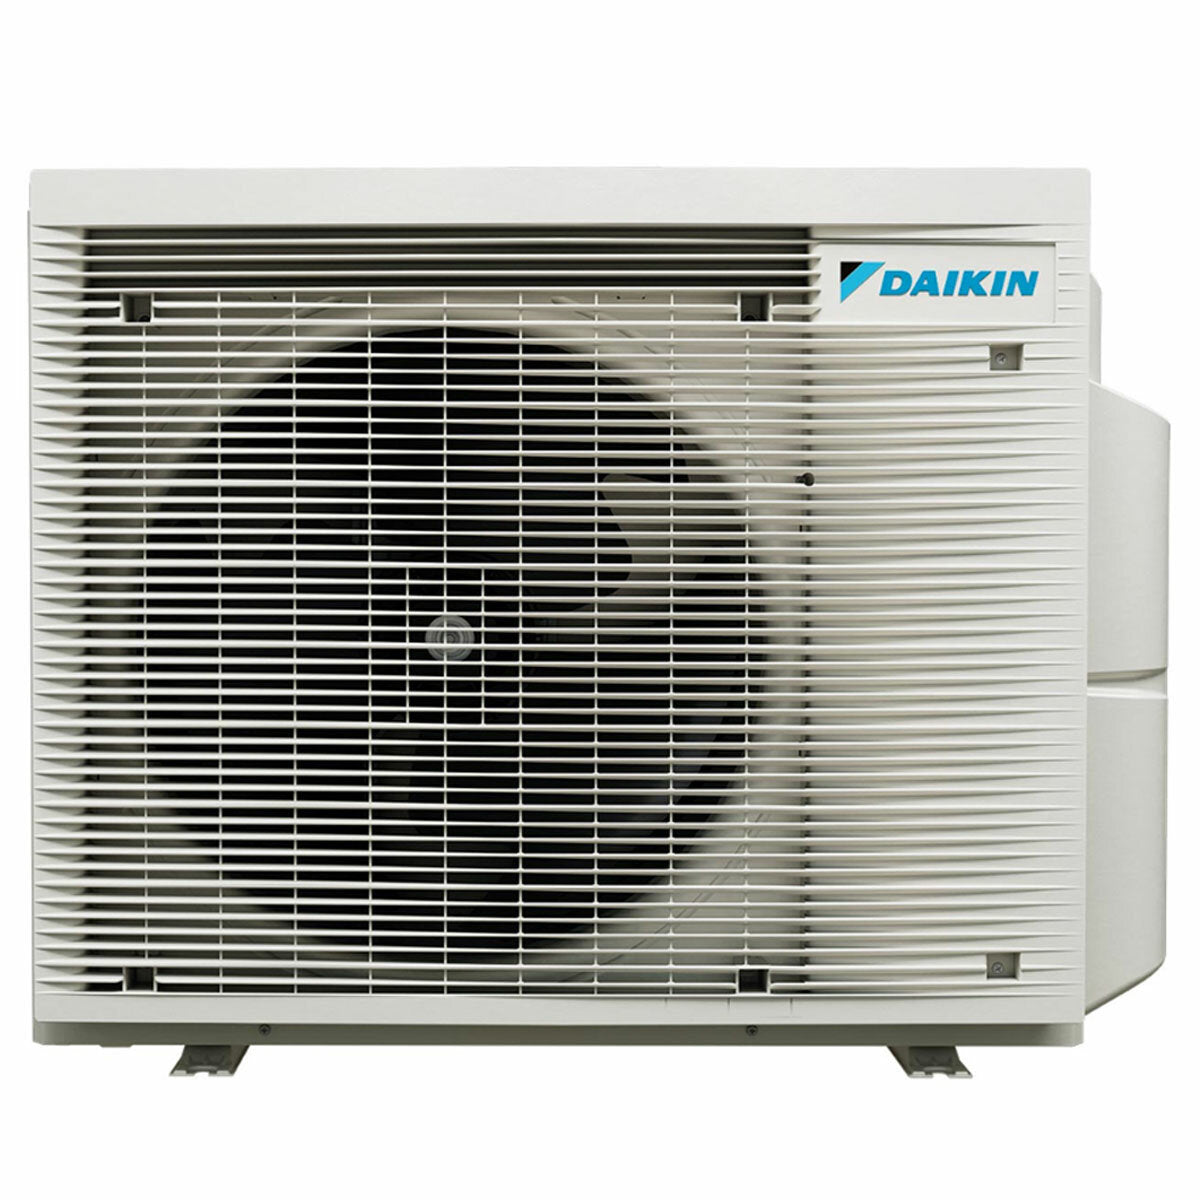 Daikin Emura 3 trial split air conditioner 12000+12000+18000 BTU inverter A+ wifi outdoor unit 7.4 kW White